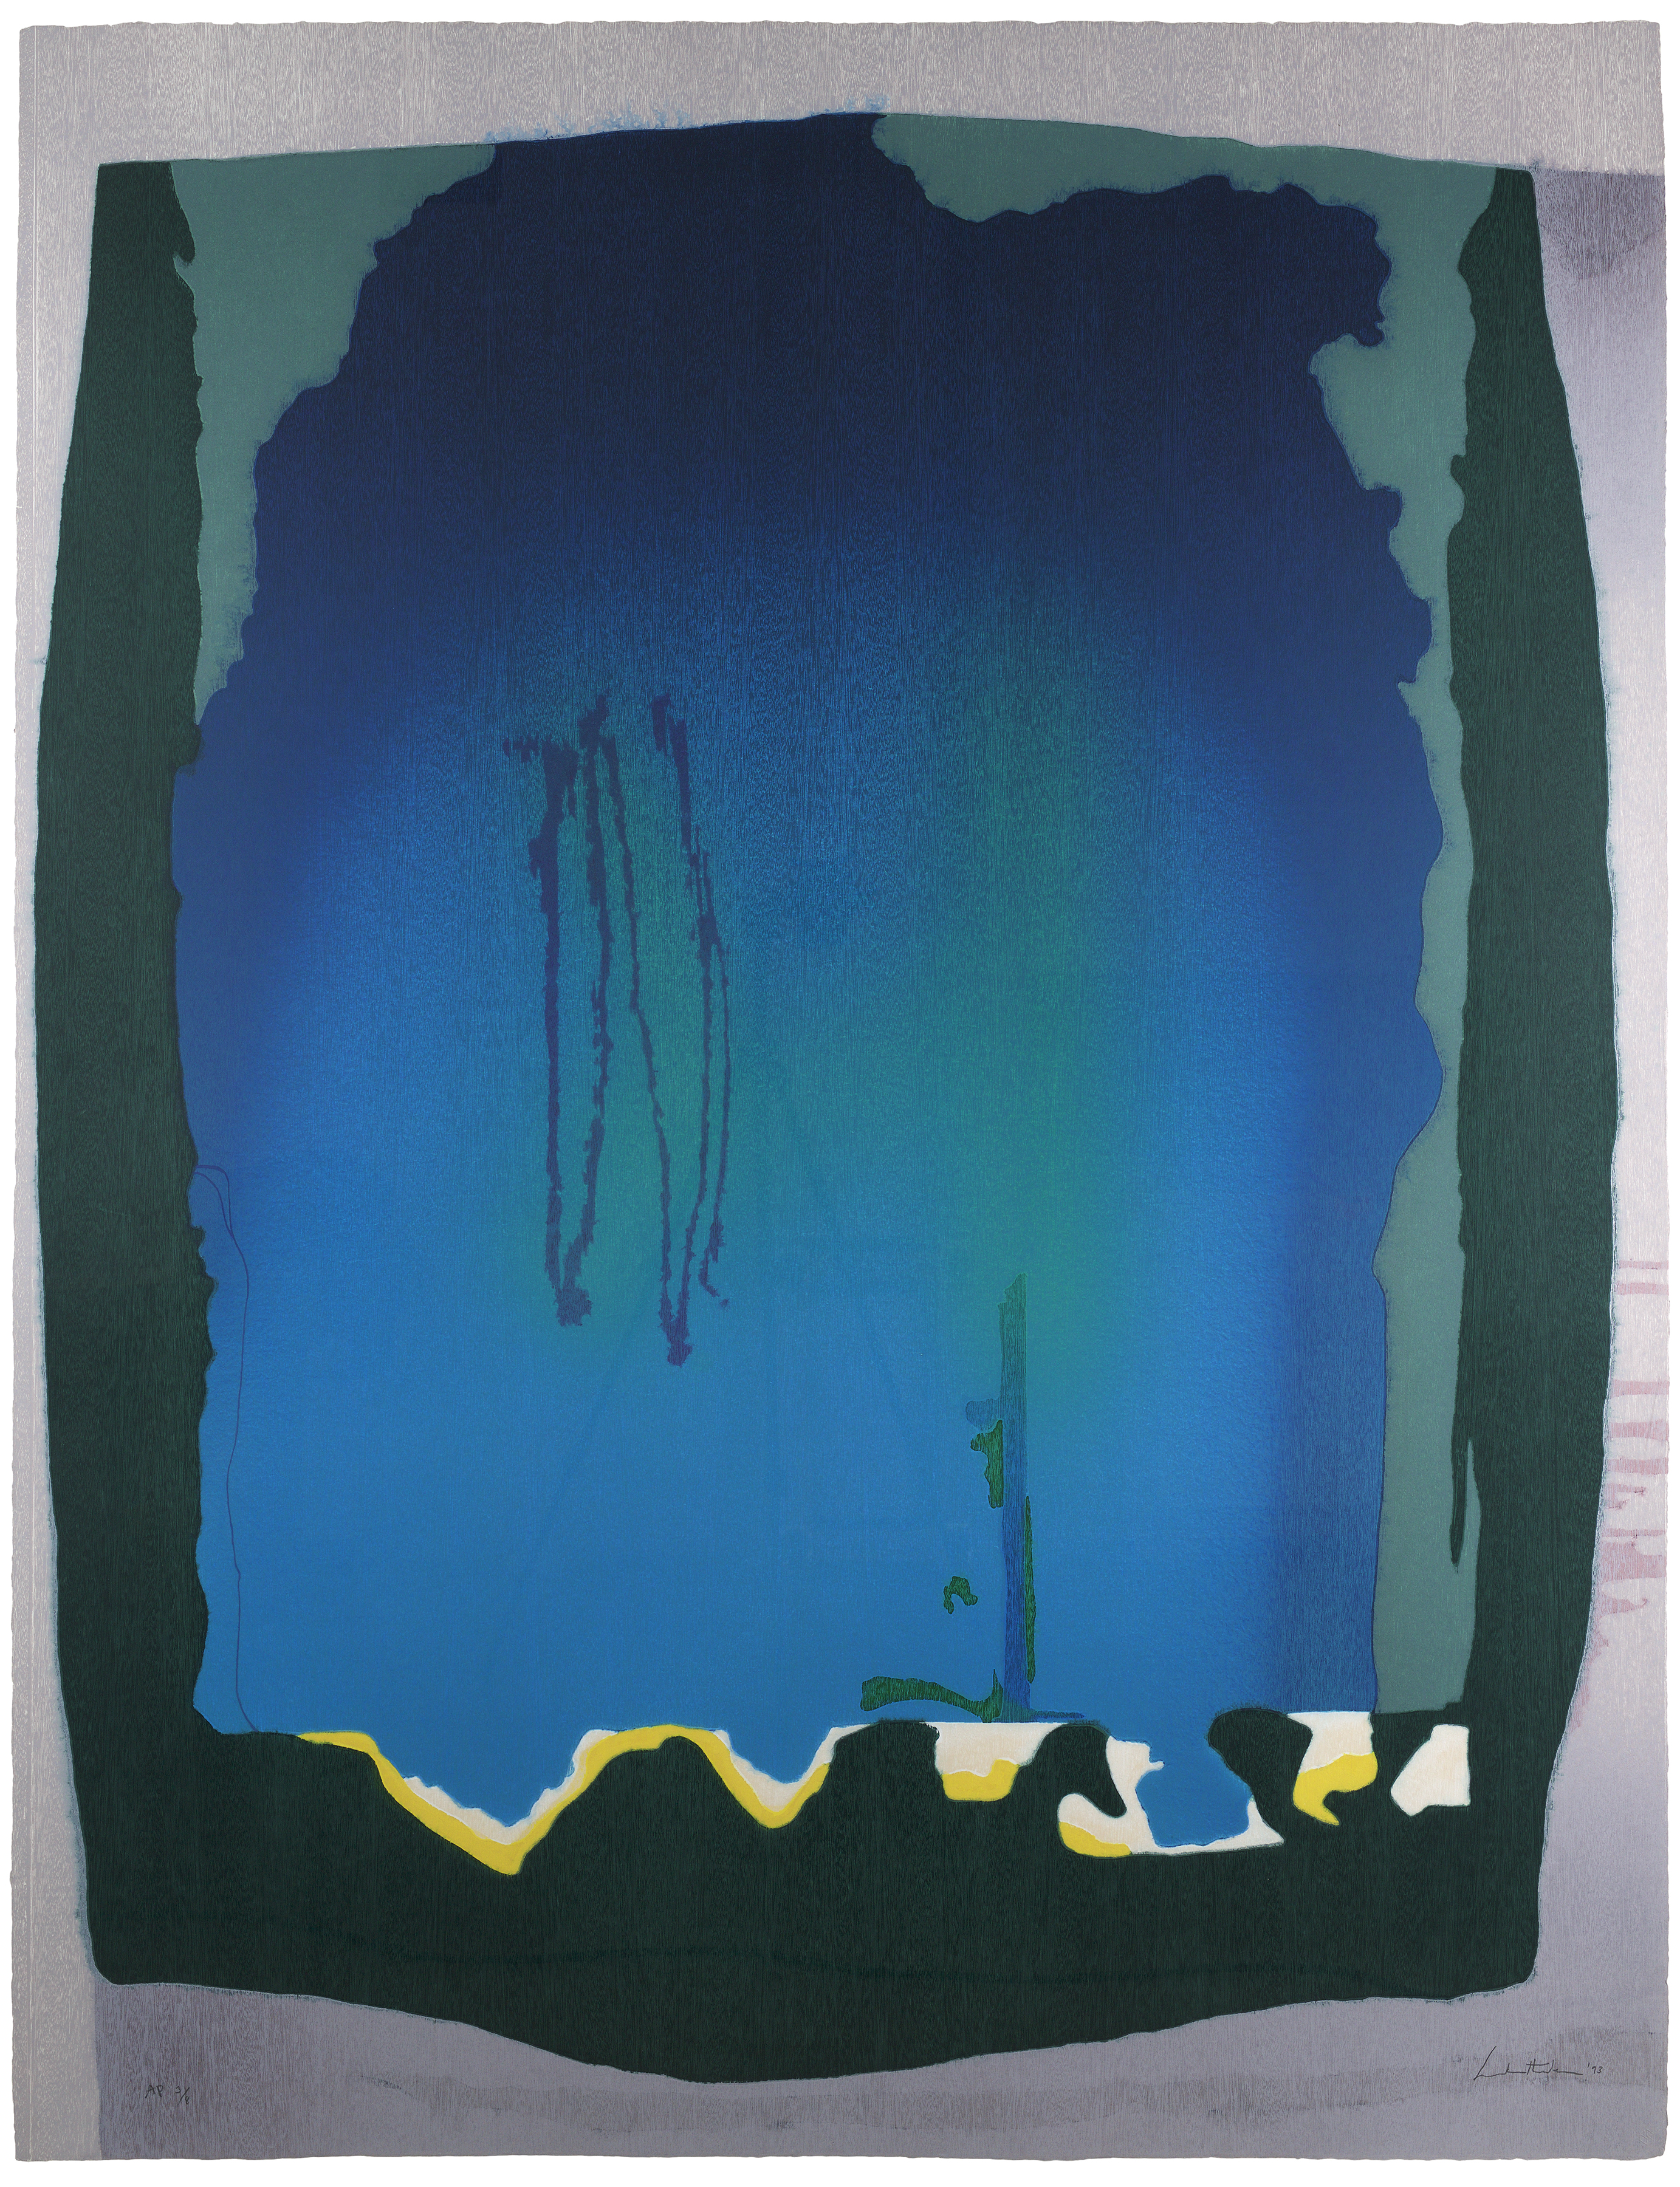 Szabadesés by Helen Frankenthaler - 1993 - 199.4 x 153.7 cm 